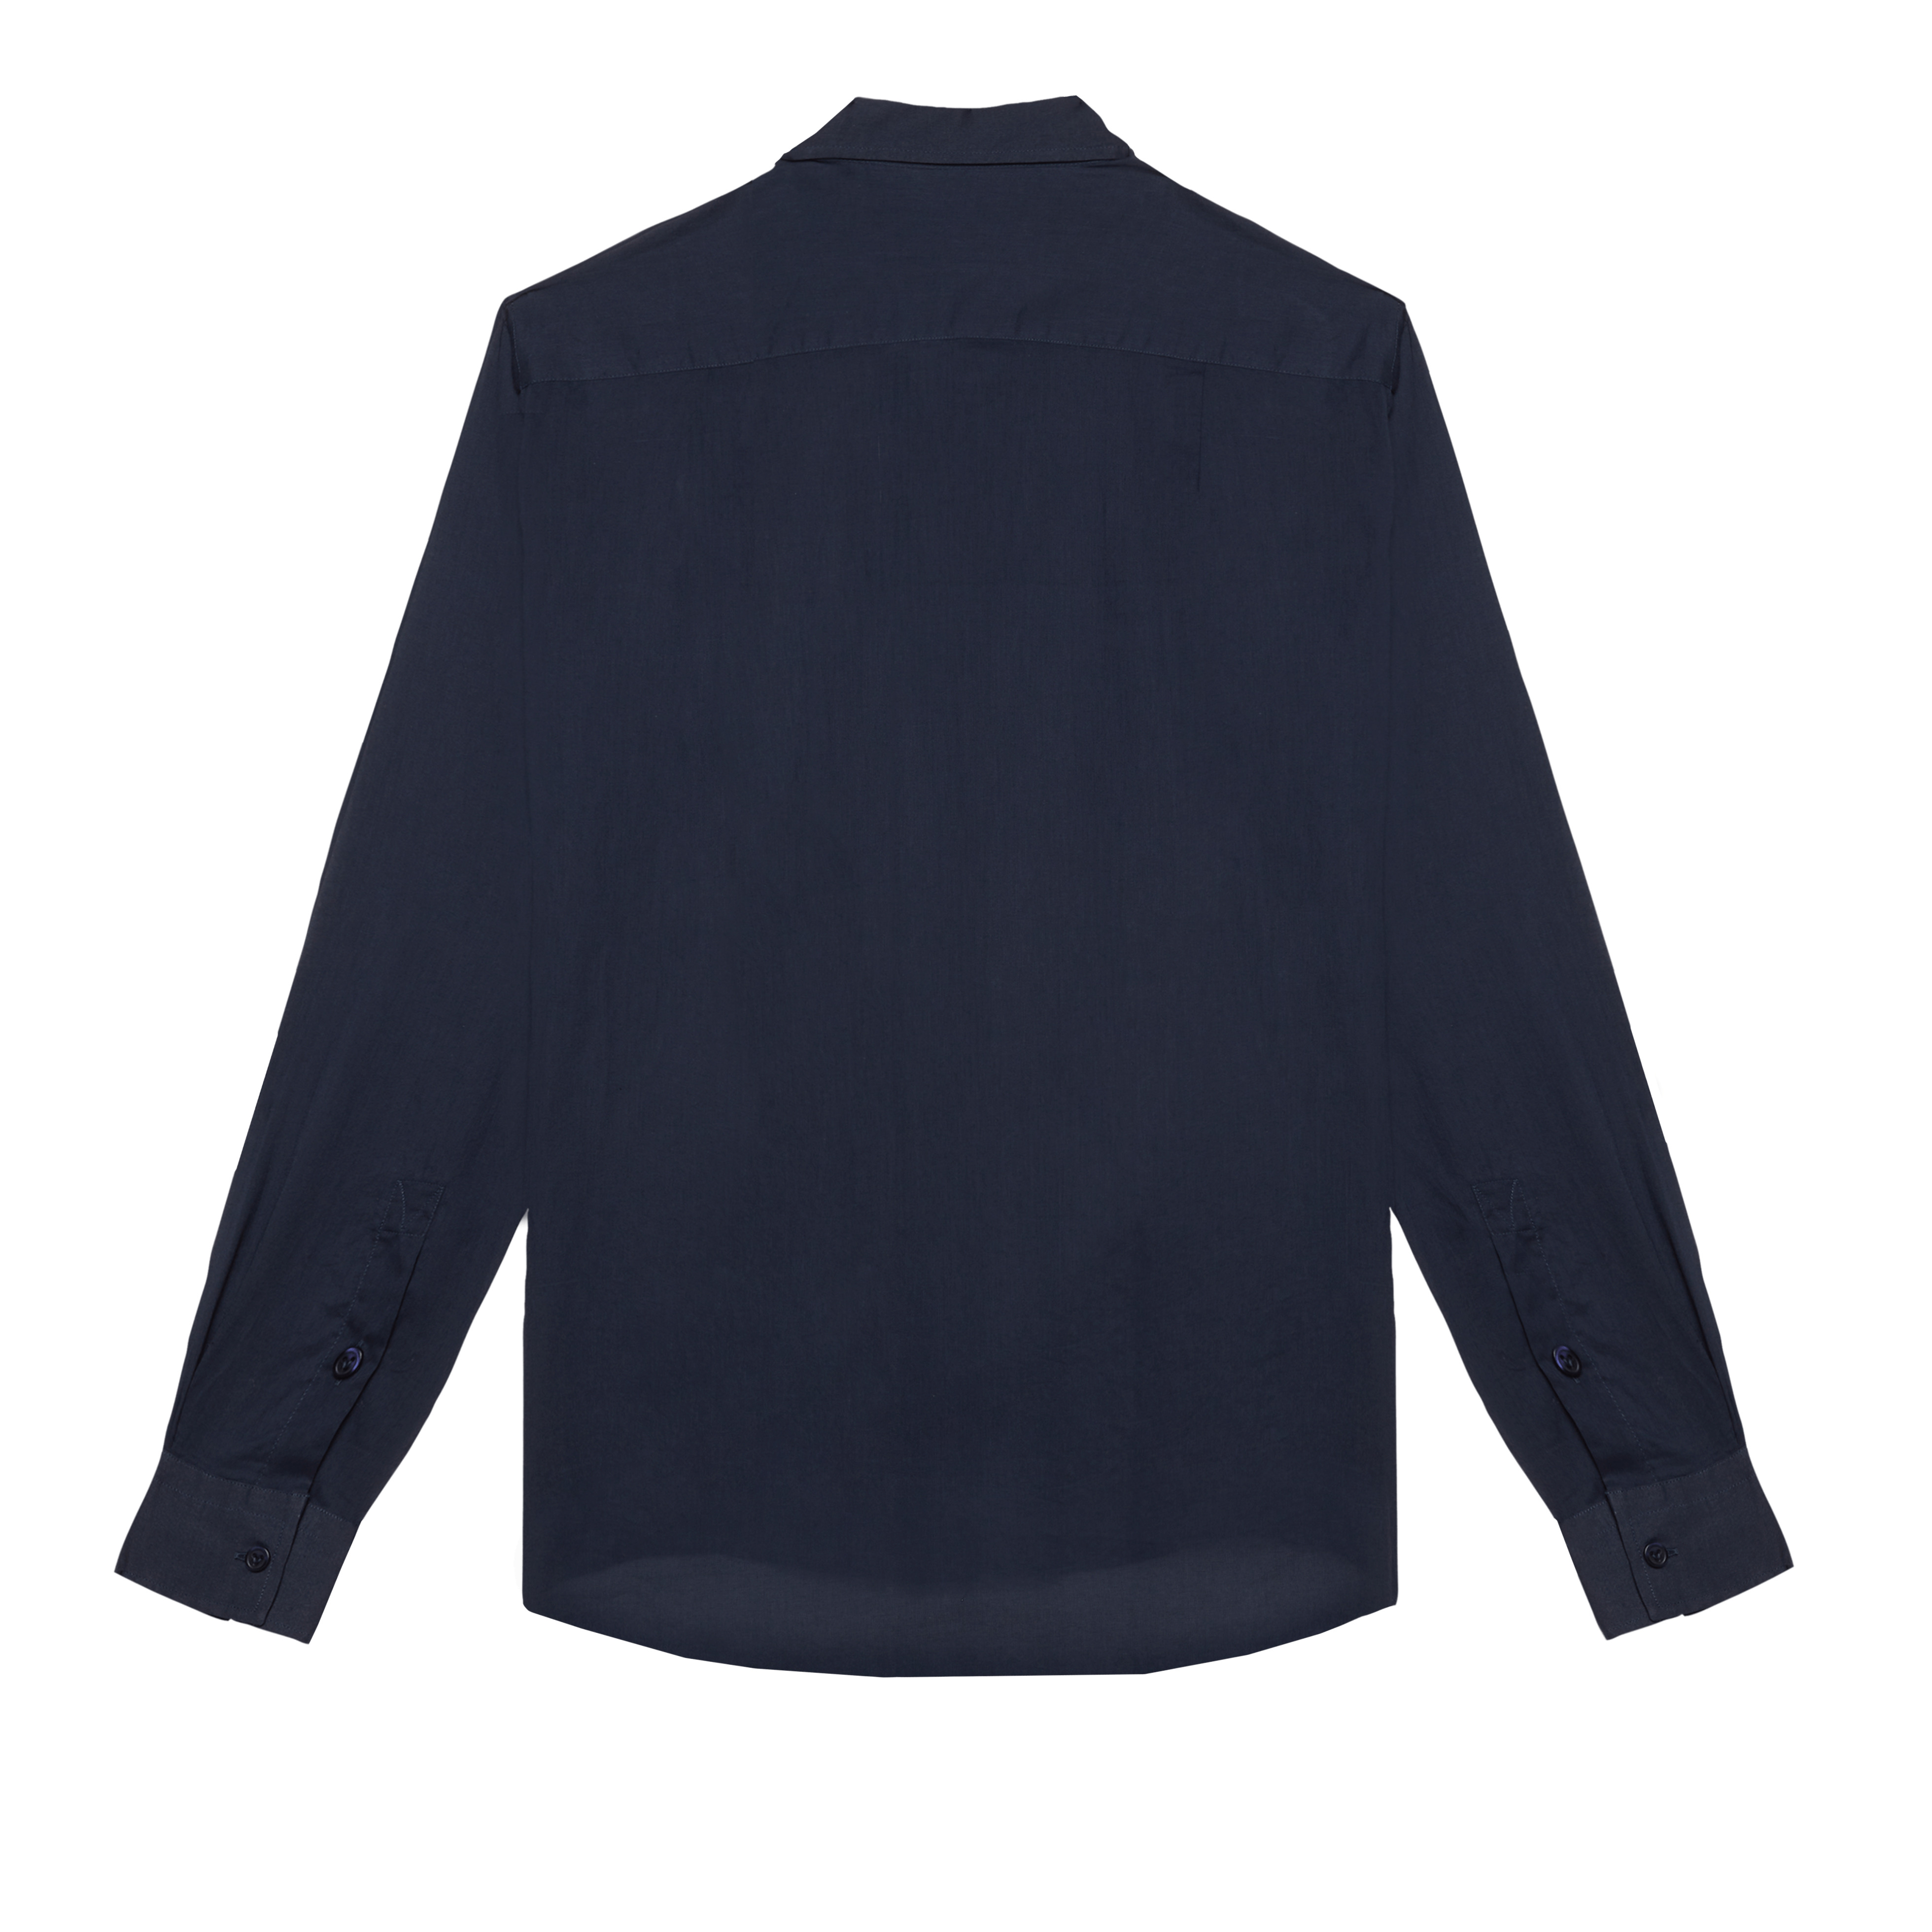 Unisex Cotton Voile Lightweight Shirt Solid - 2